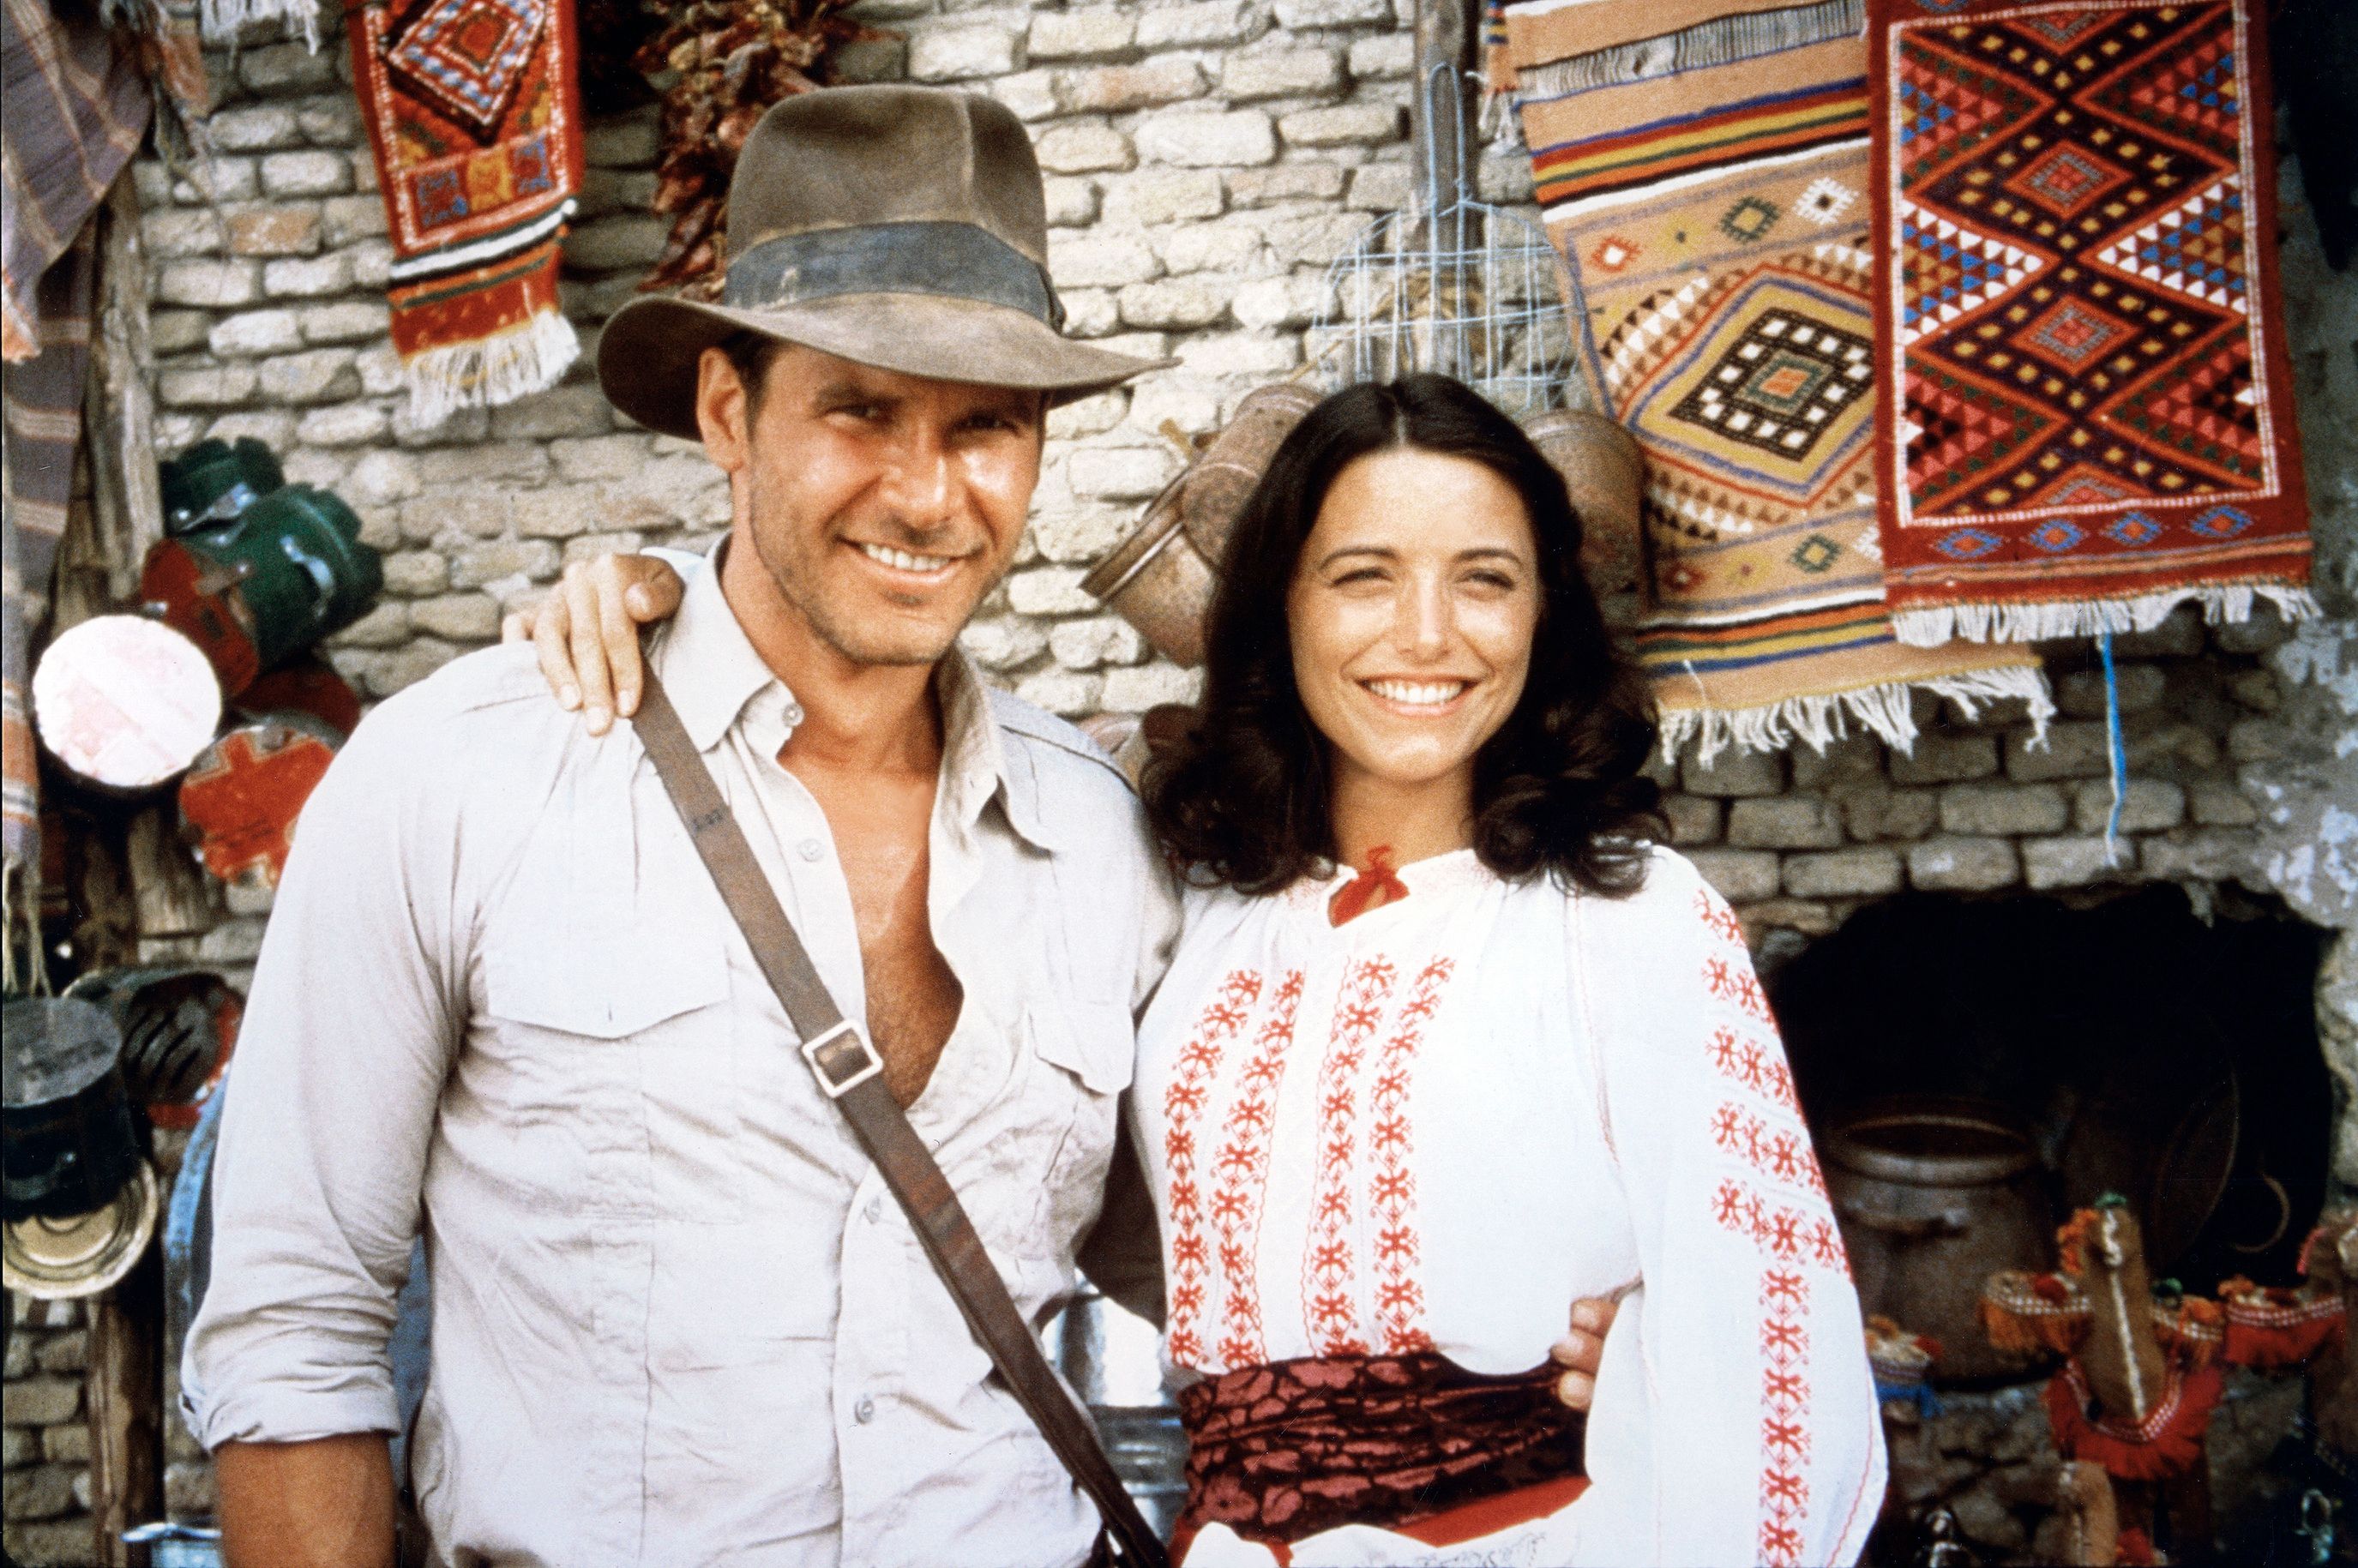 Viaje al pasado de Indiana Jones con Harrison Ford, el último gran héroe  clásico de la historia del cine